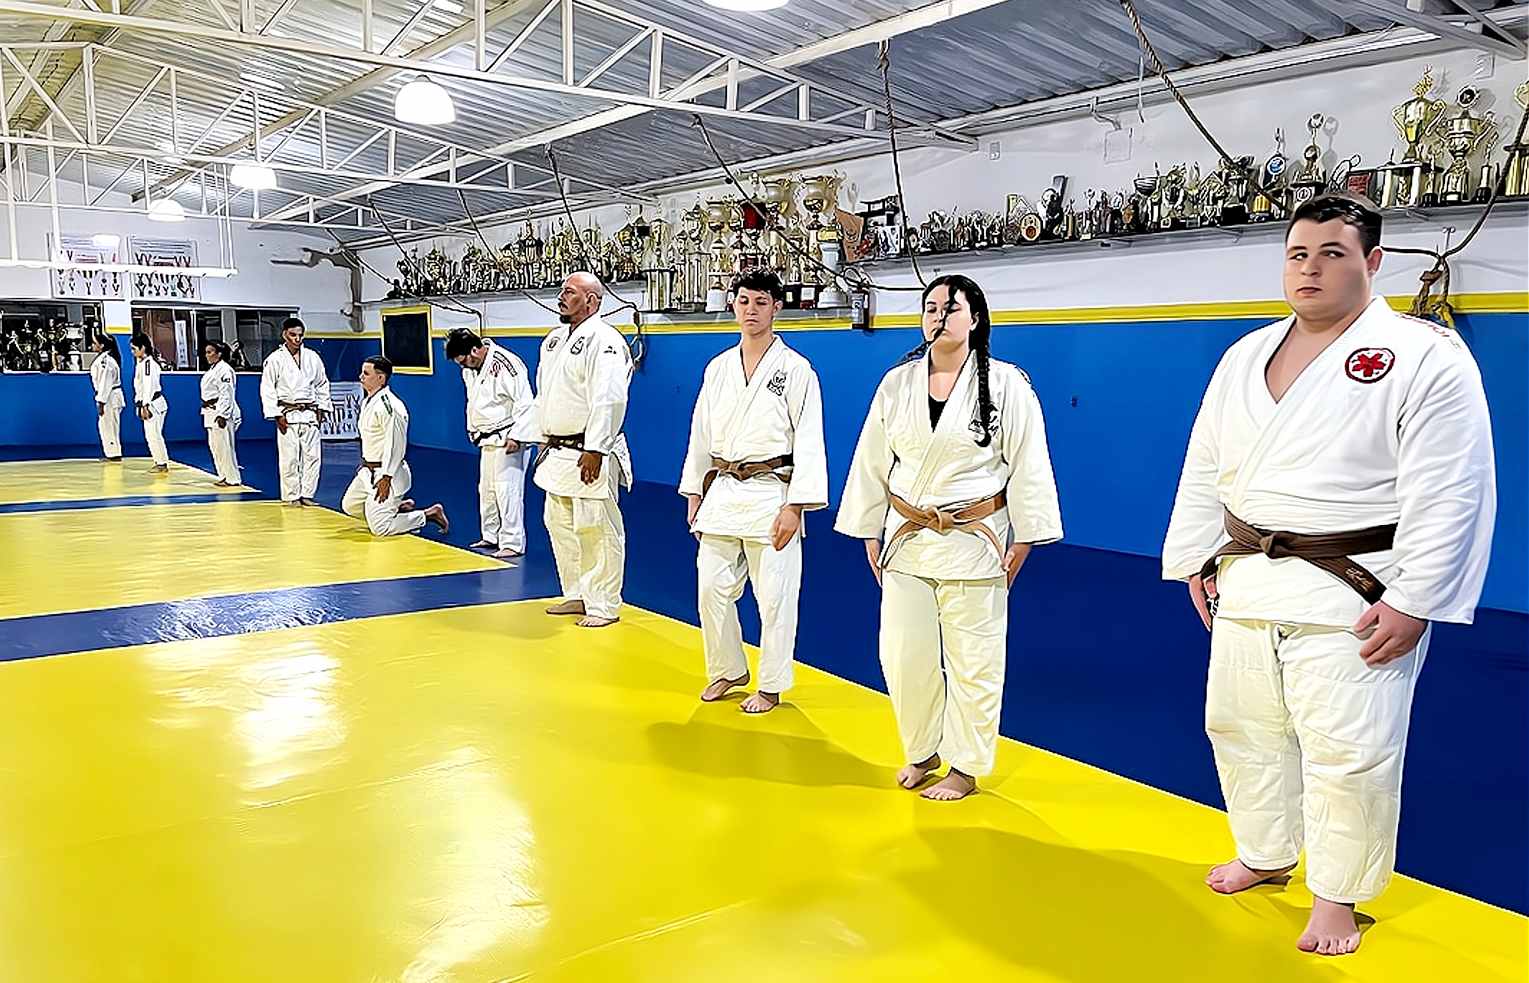 Evento reuniu dezoito judocas com o objetivo de se preparar para o exame de graduação